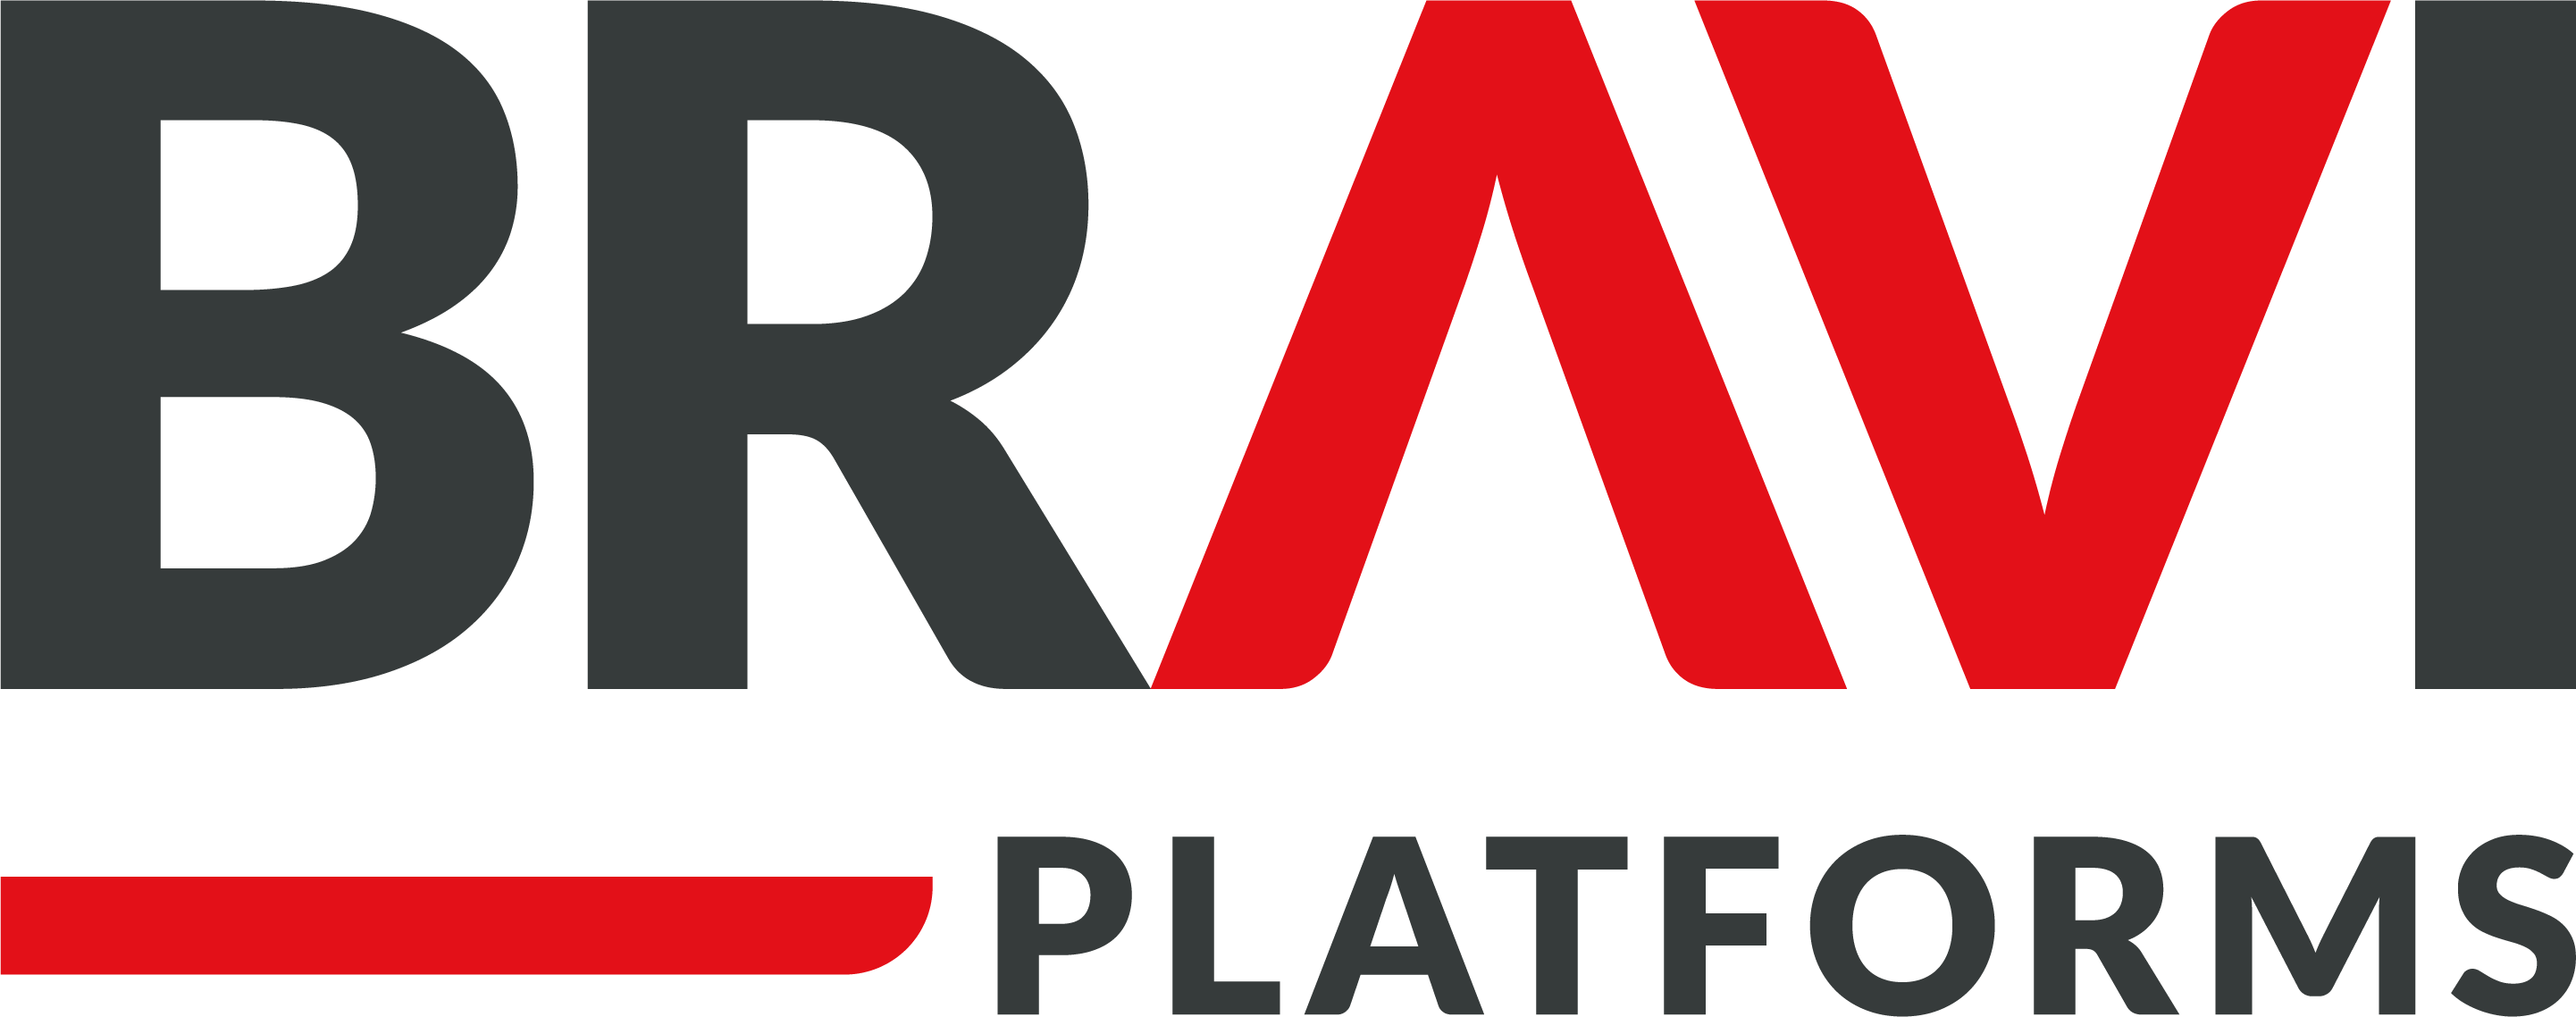 Oana - Bravi Platforms Logo